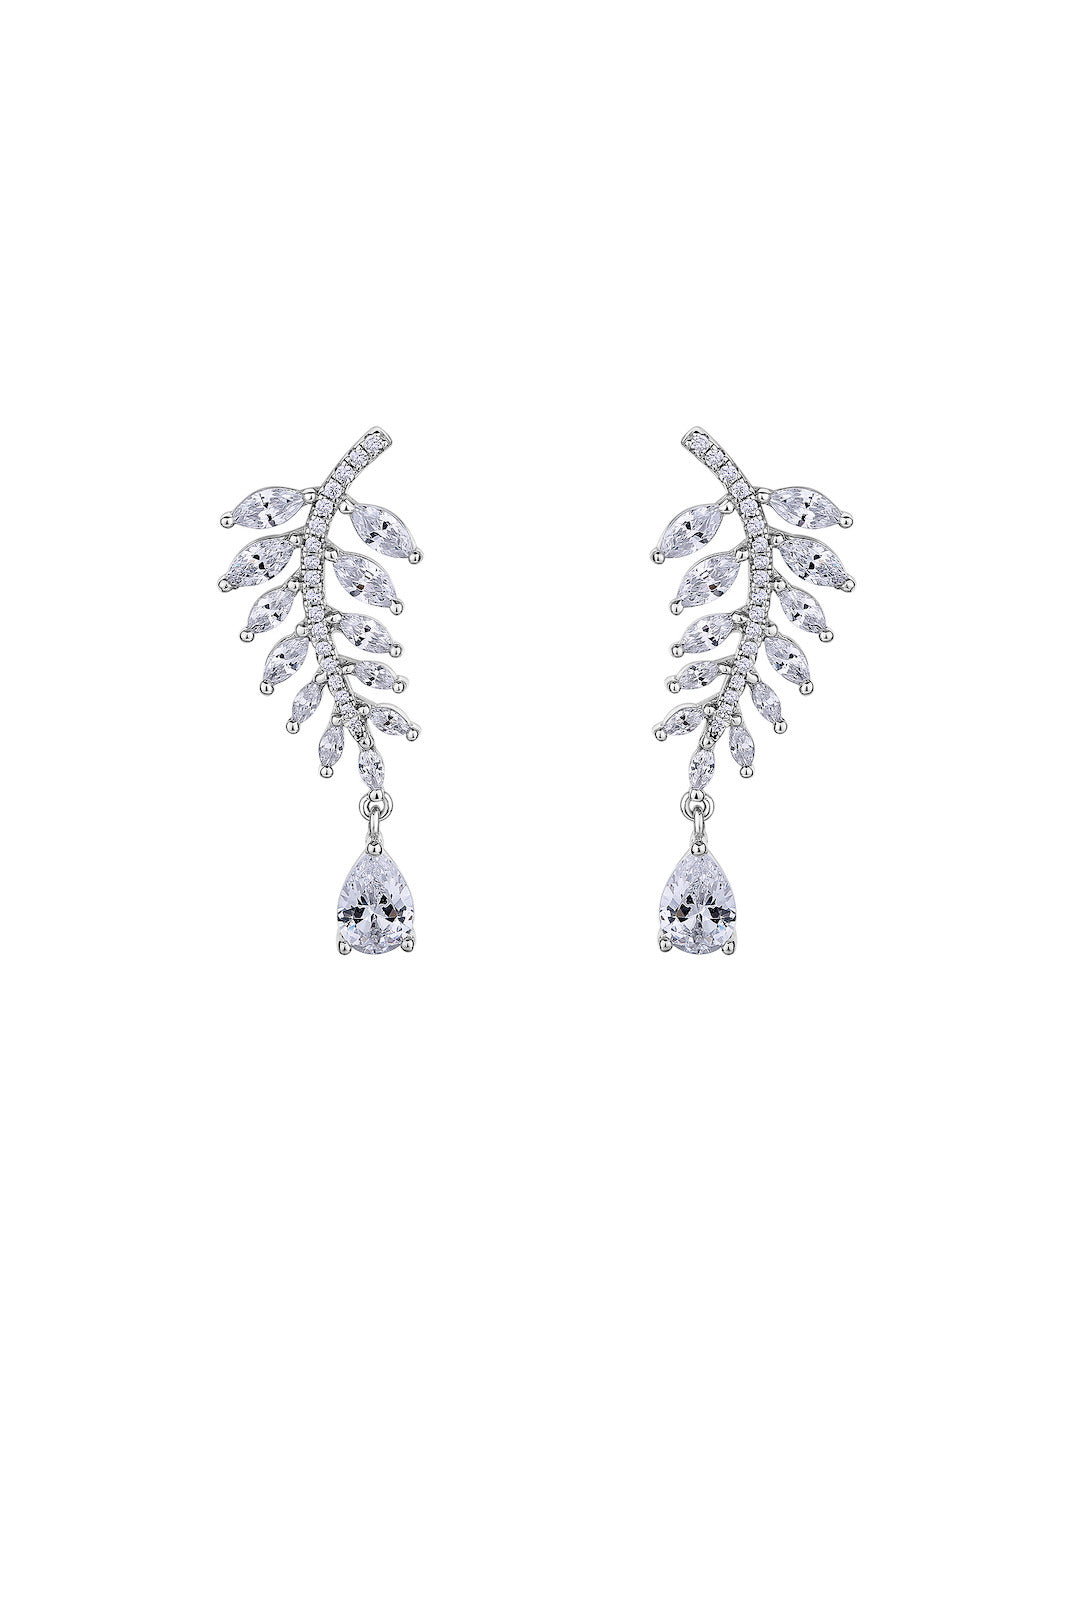 CHANEL FINE JEWELRY PLUME DE CHANEL diamond ring bracelet earrings